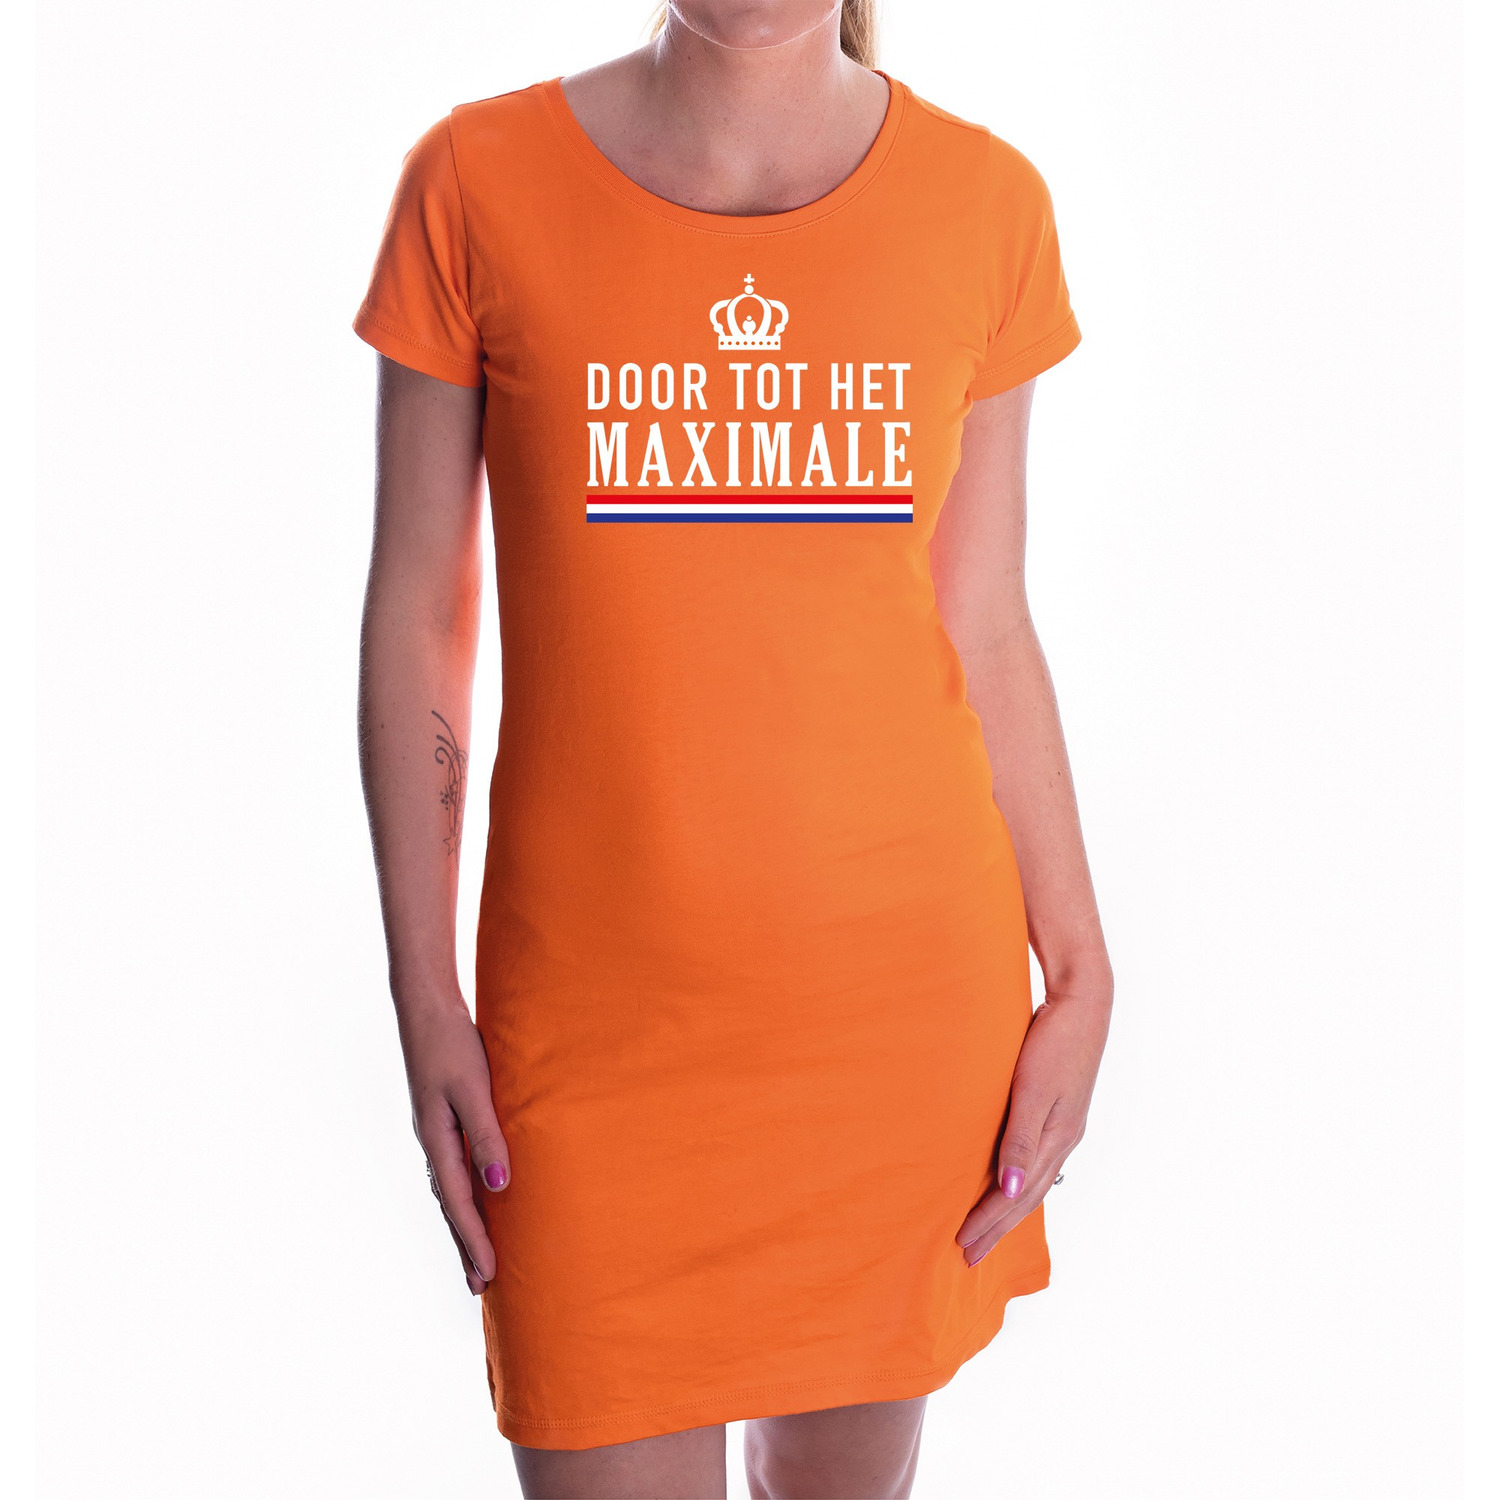 Koningsdag jurk oranje door tot het maximale voor dames